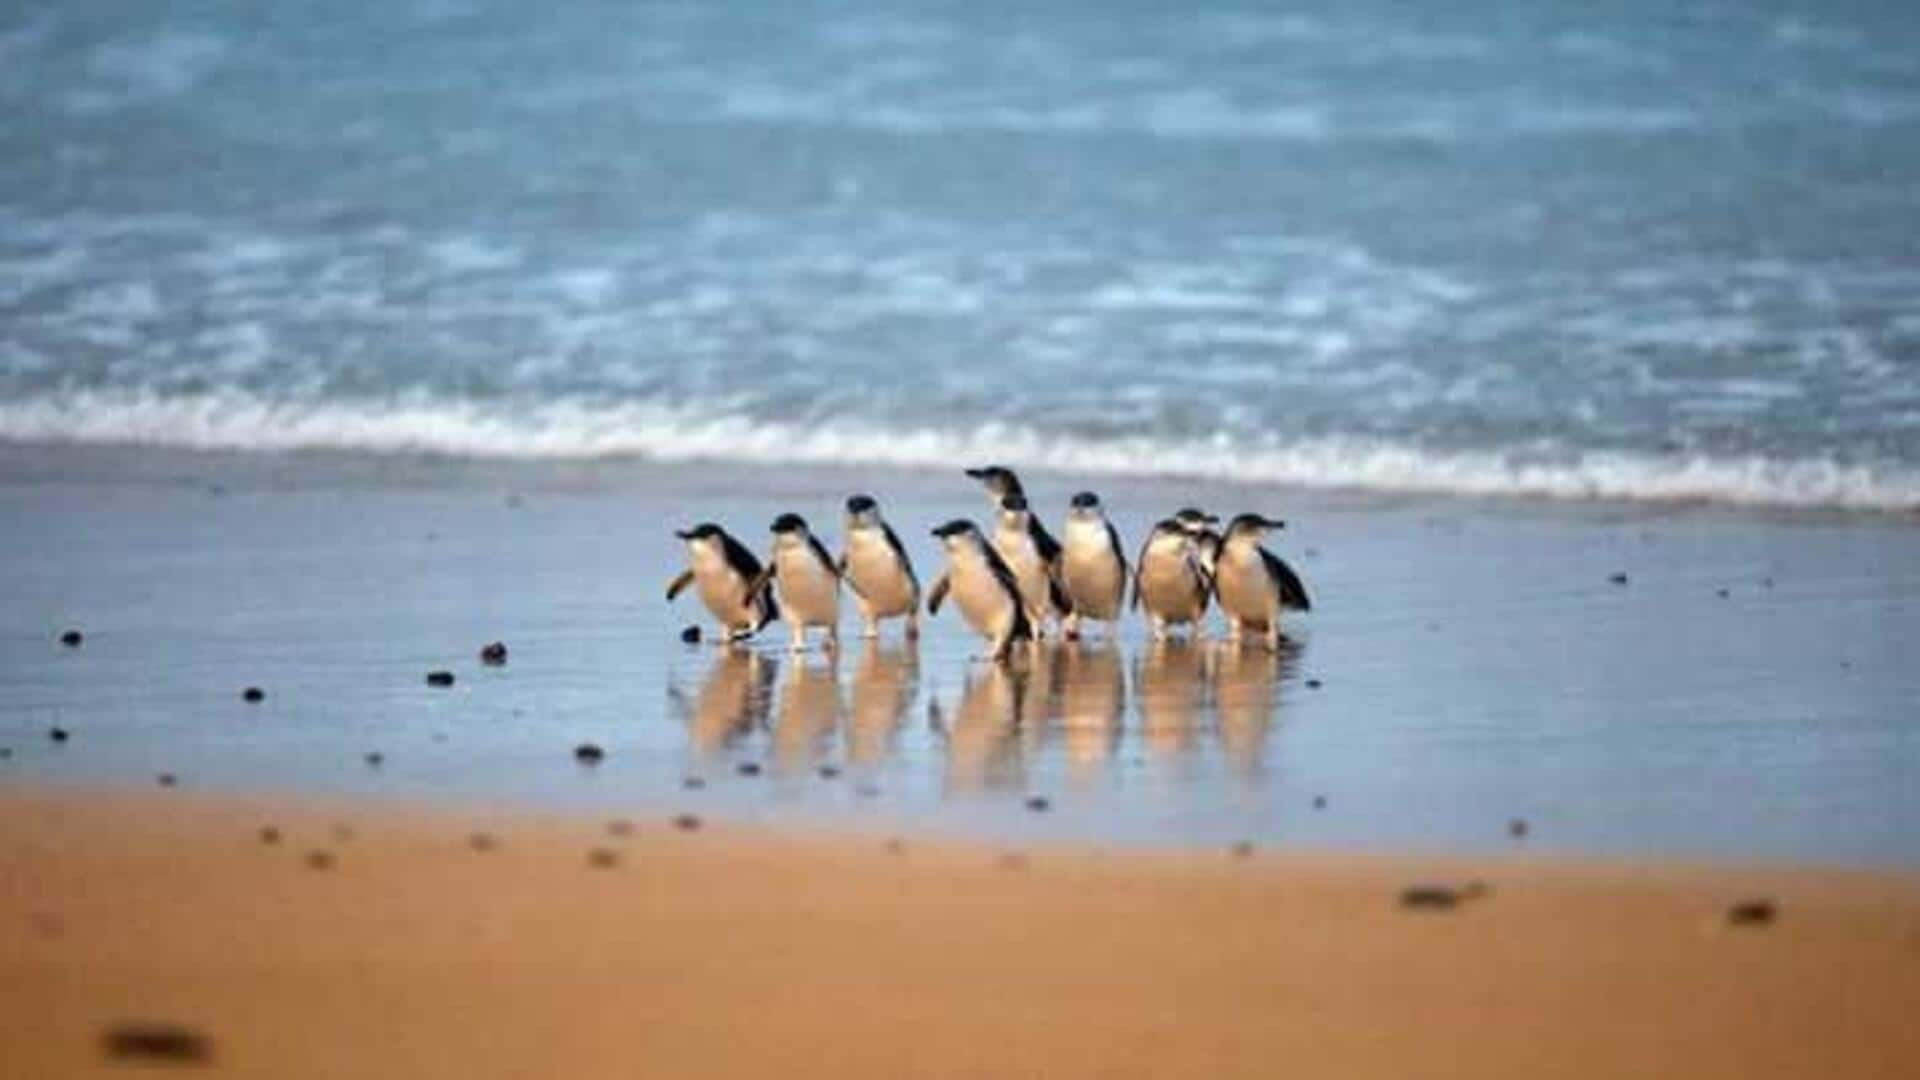 Saksikan Parade Penguin Nan Ajaib Di Phillip Island, Australia